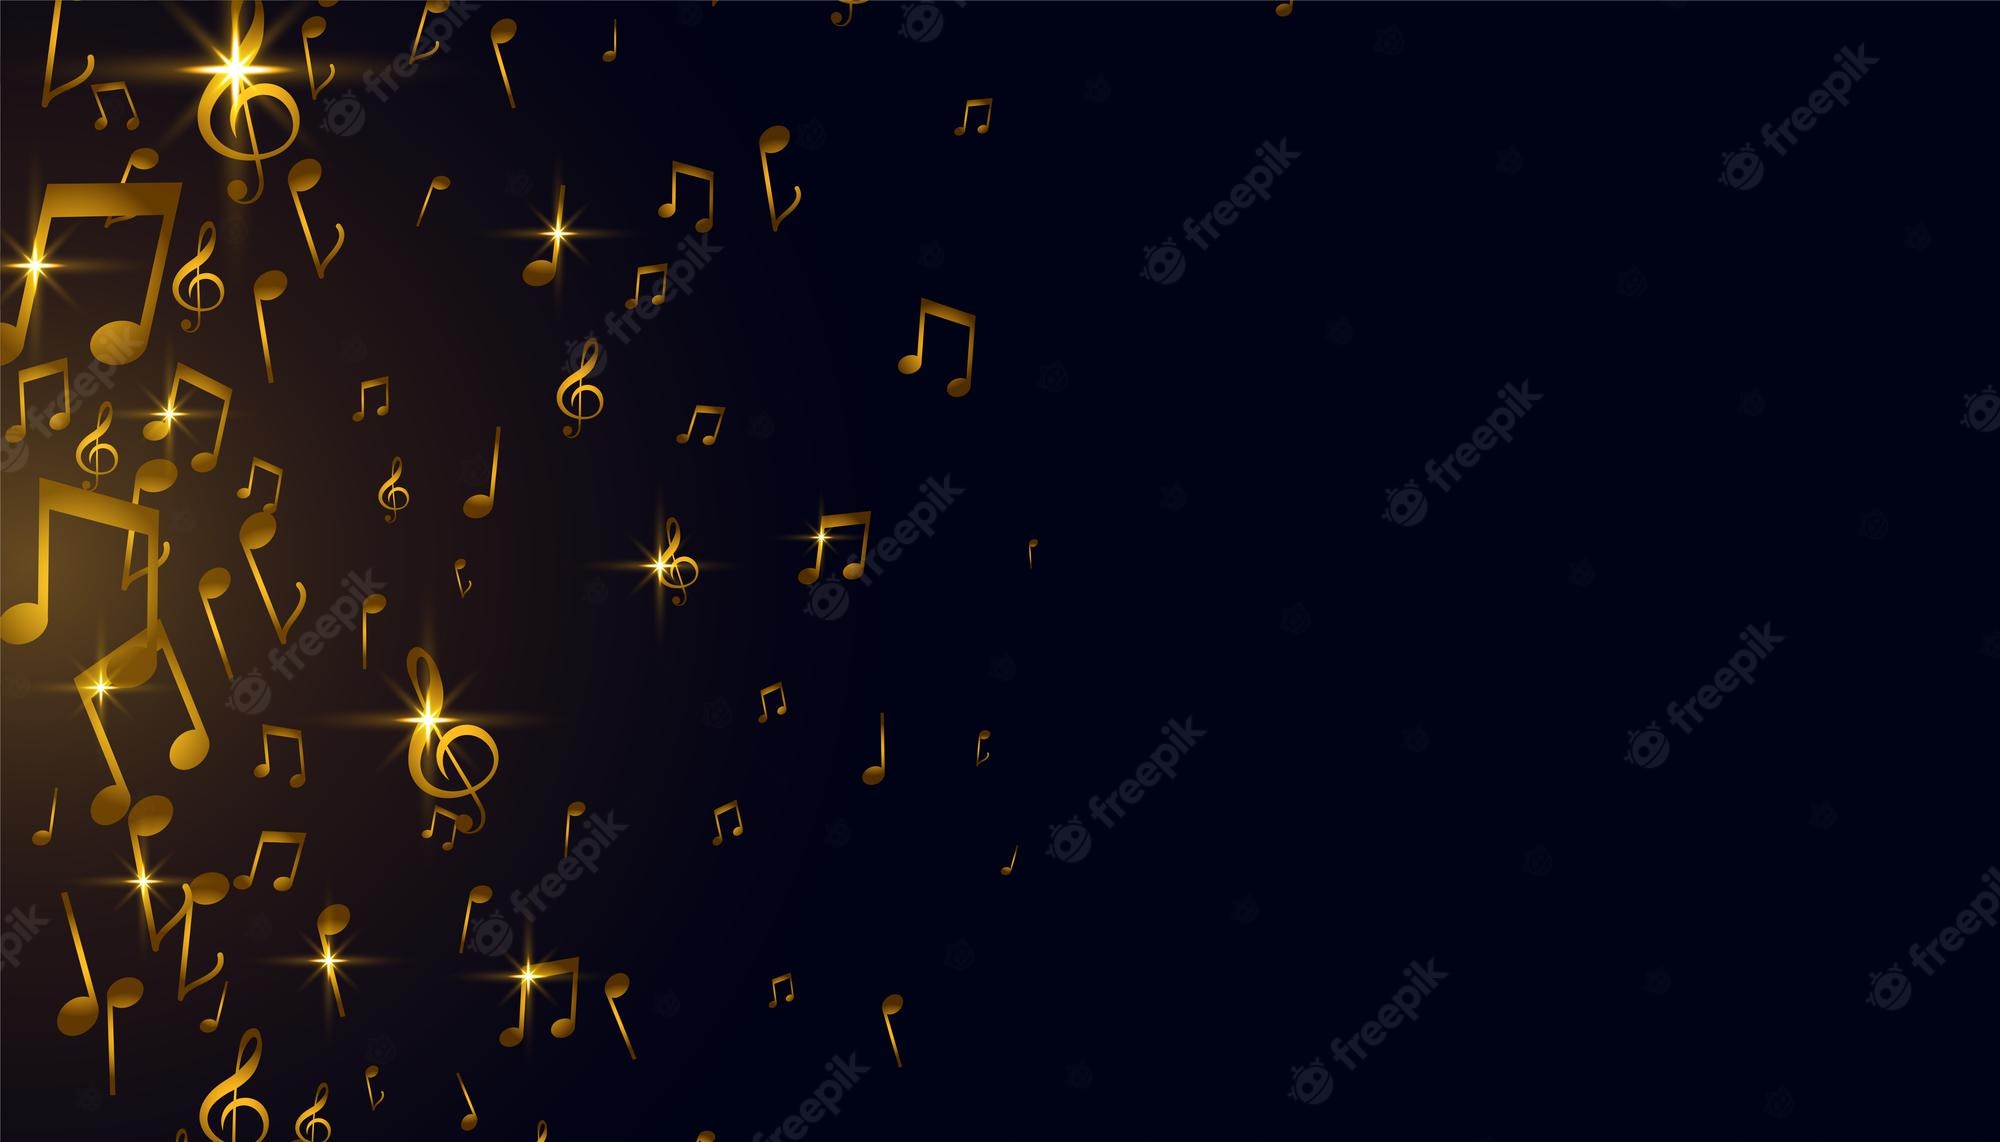 Music Background Image